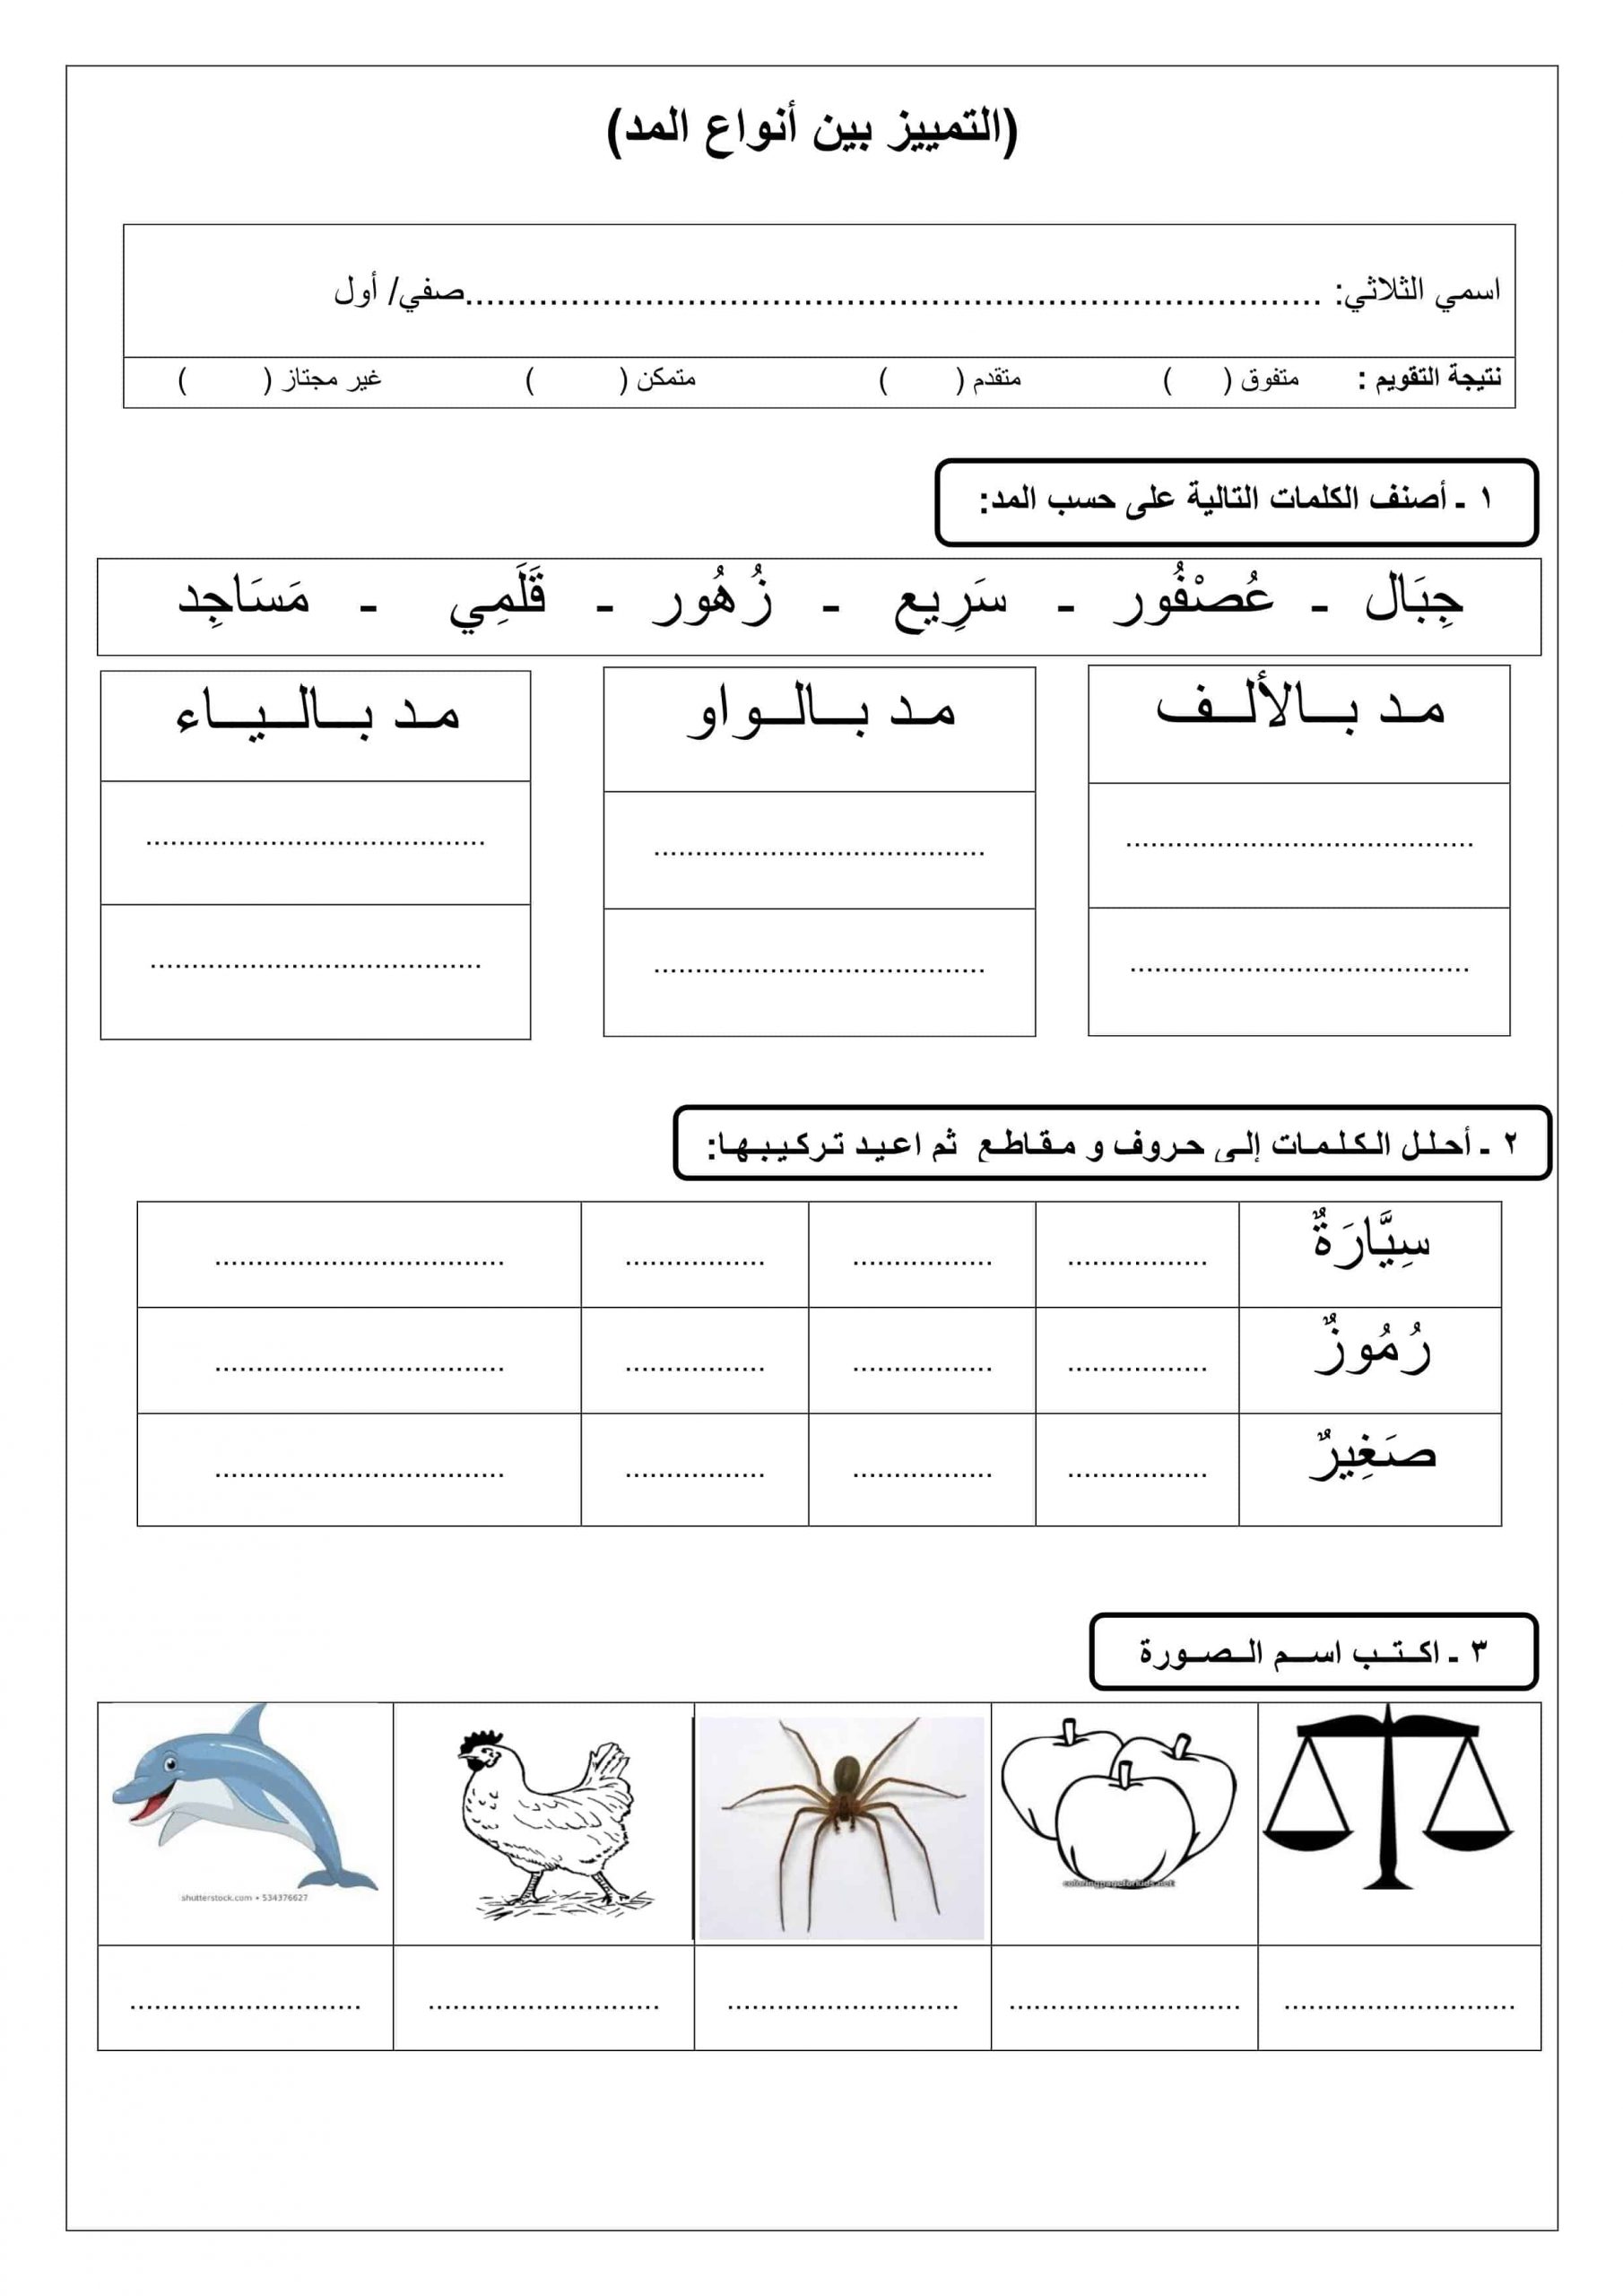 ورقة عمل التمييز بين أنواع المد الصف الأول مادة اللغة العربية 